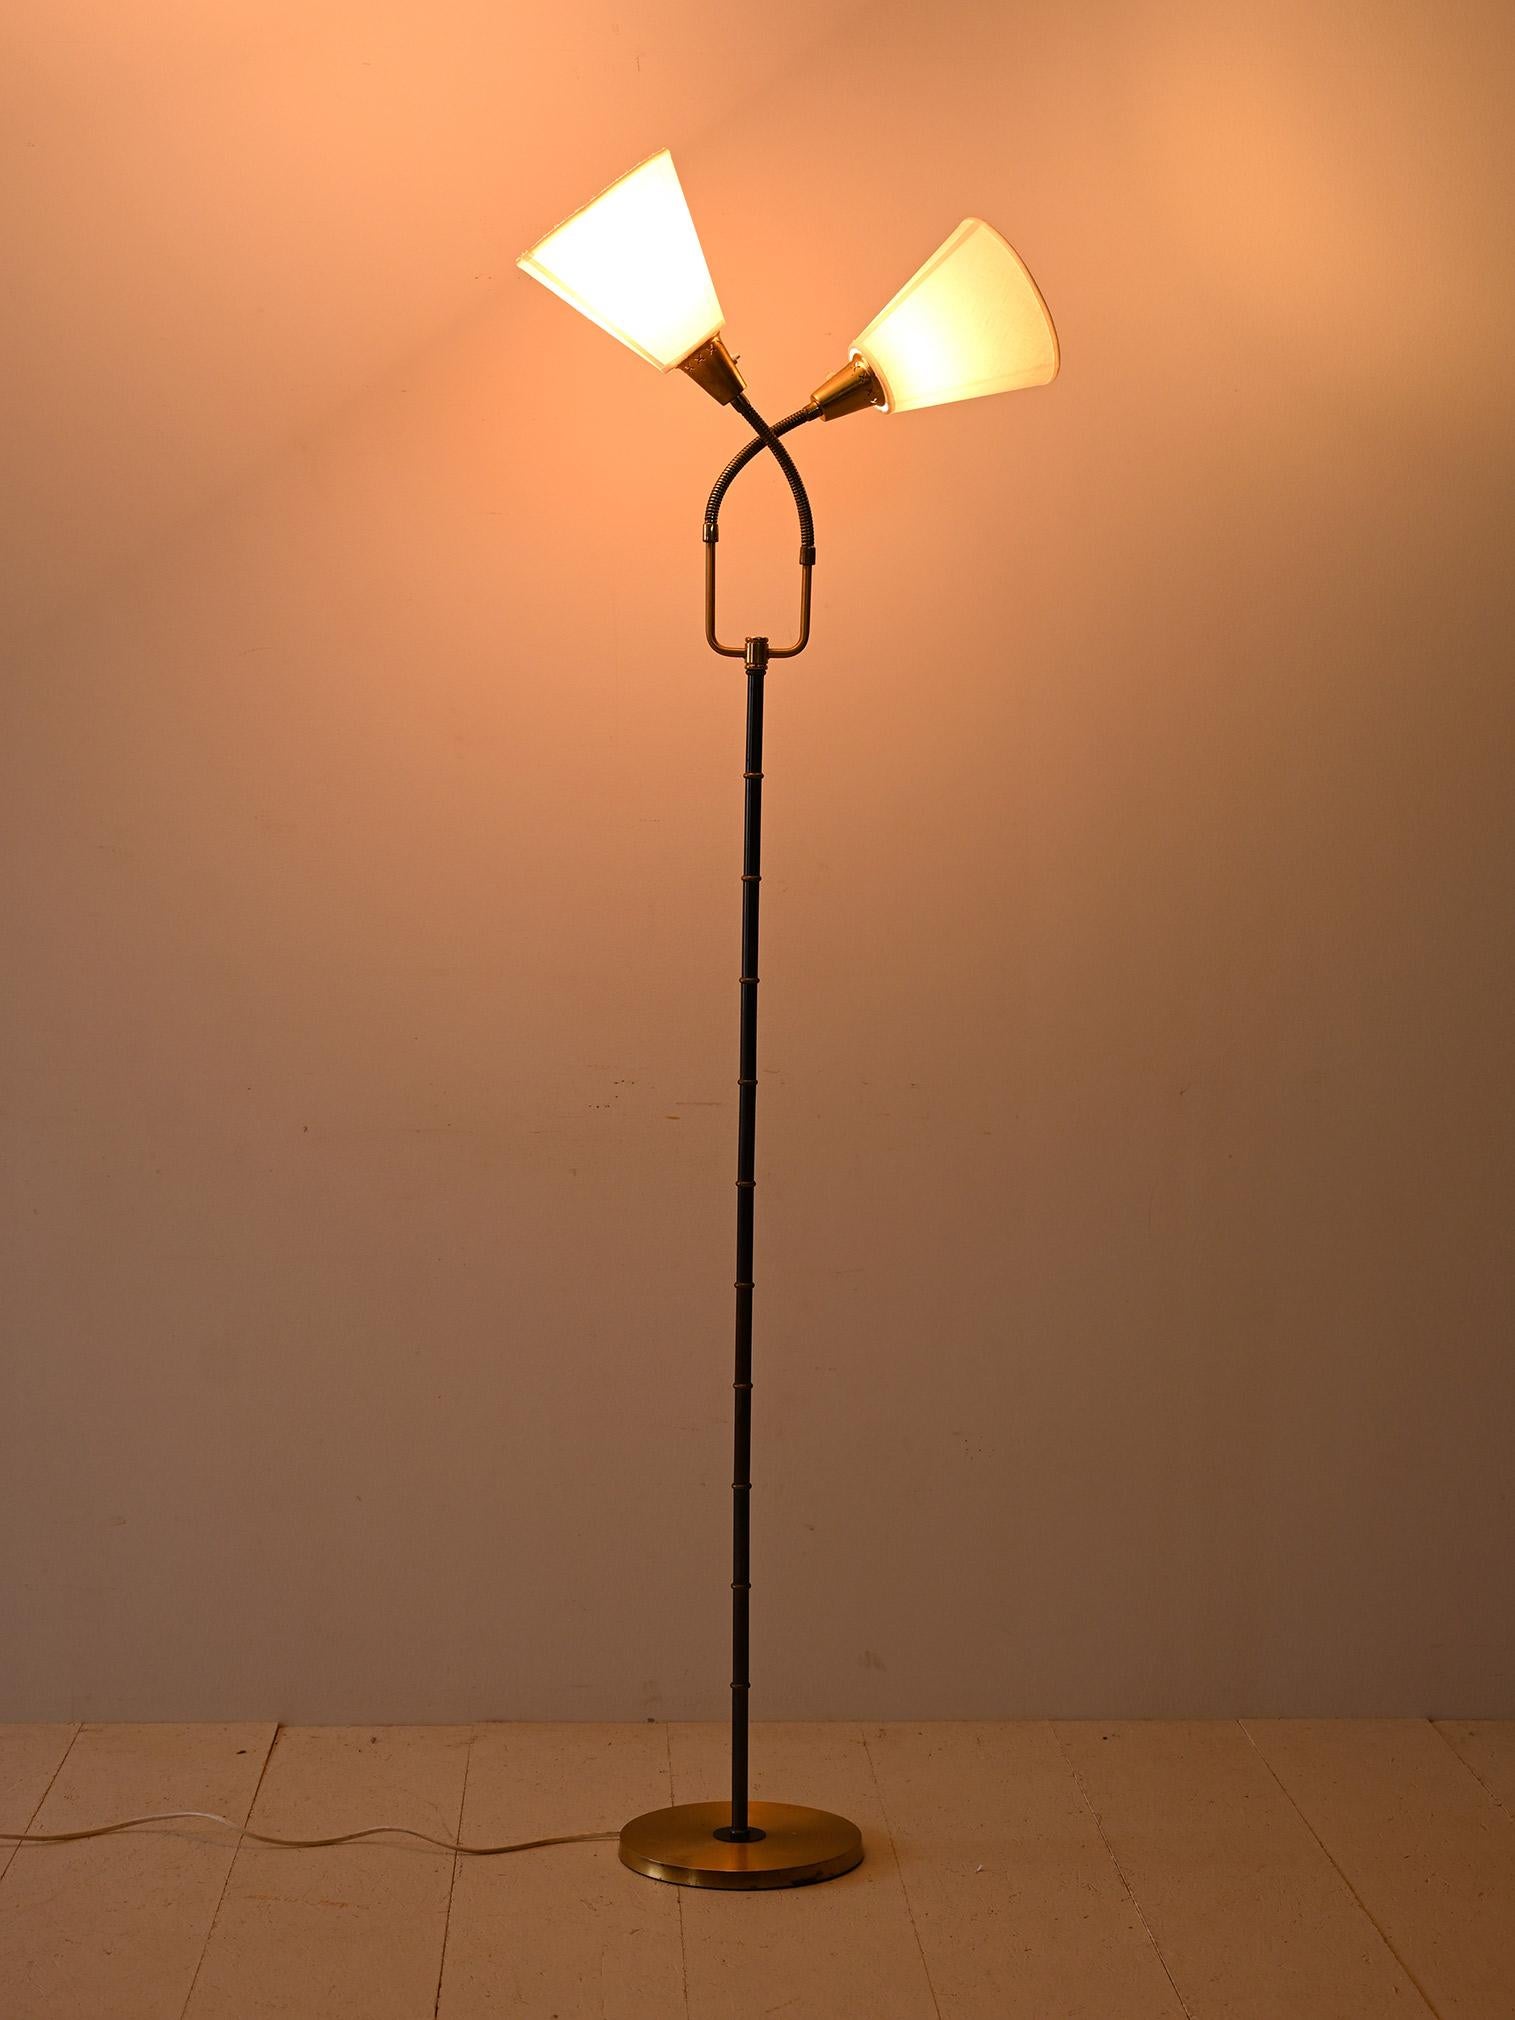 Cette lampe vintage se caractérise par un design minimaliste, inspiré du style scandinave. Le cadre en métal noir ajoute une touche de robustesse, tandis que la partie adjacente à l'abat-jour est flexible, ce qui permet un contrôle personnalisé de